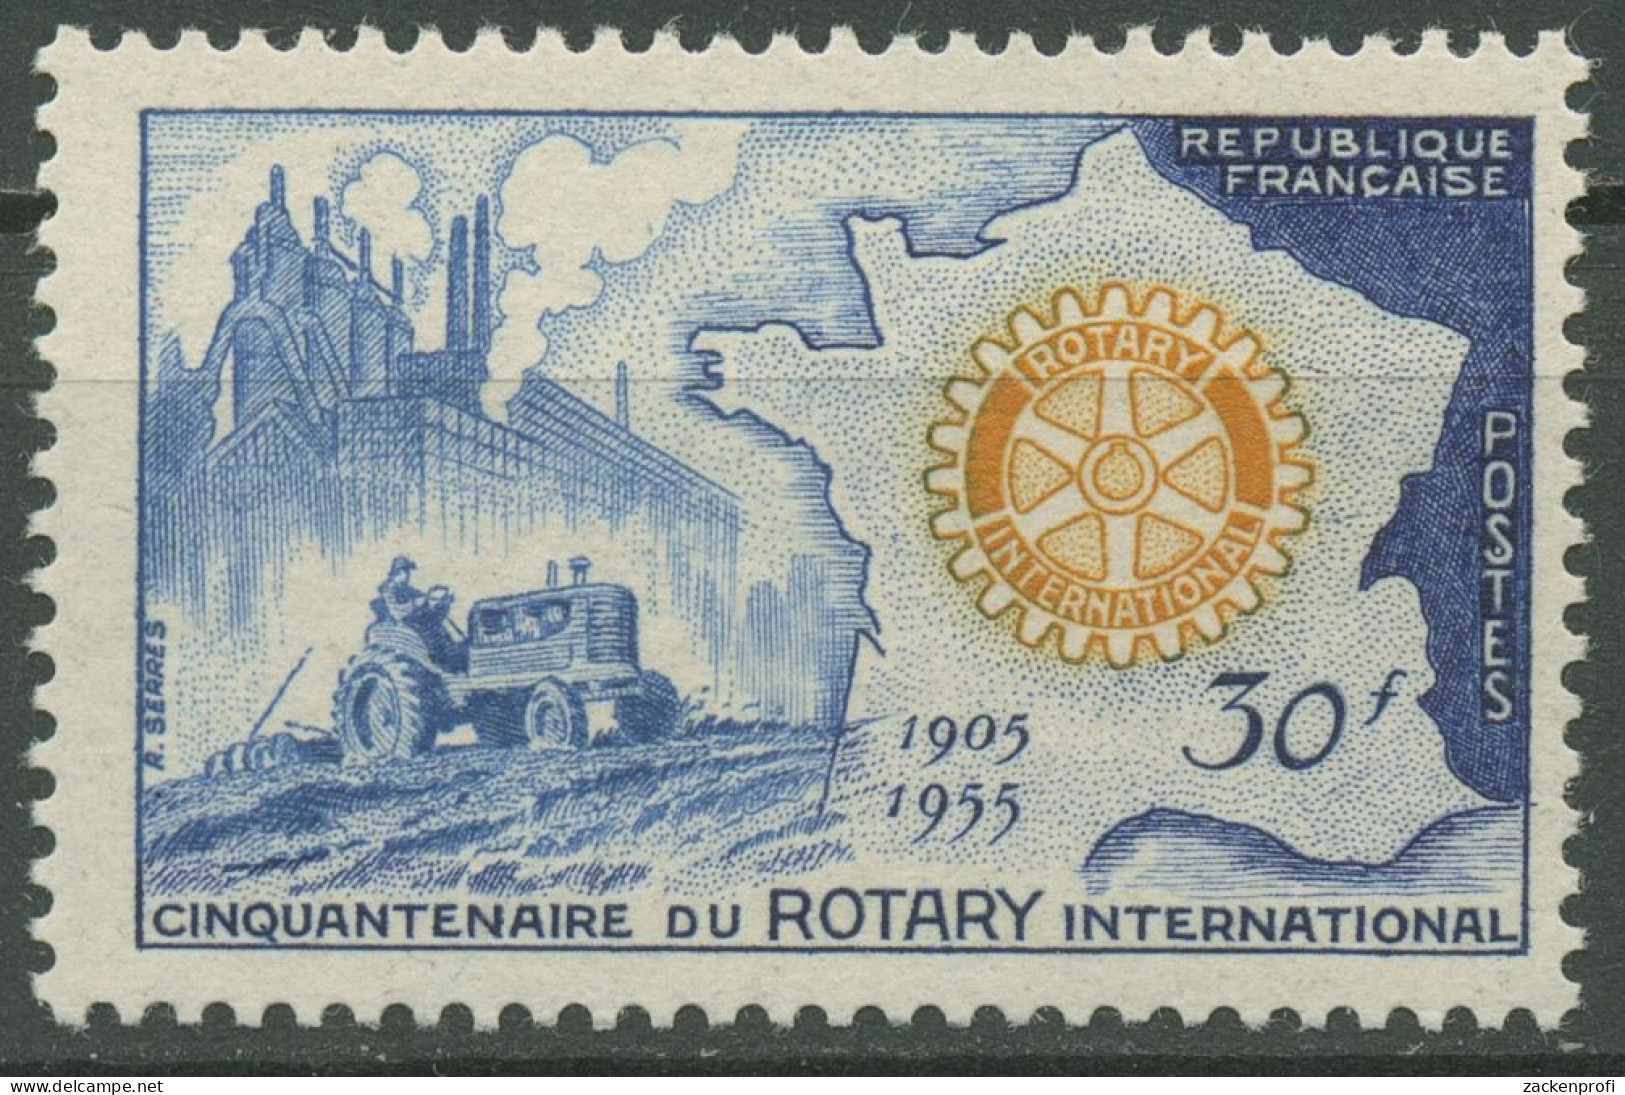 Frankreich 1955 Rotary International Traktor Landkarte 1035 Postfrisch - Unused Stamps